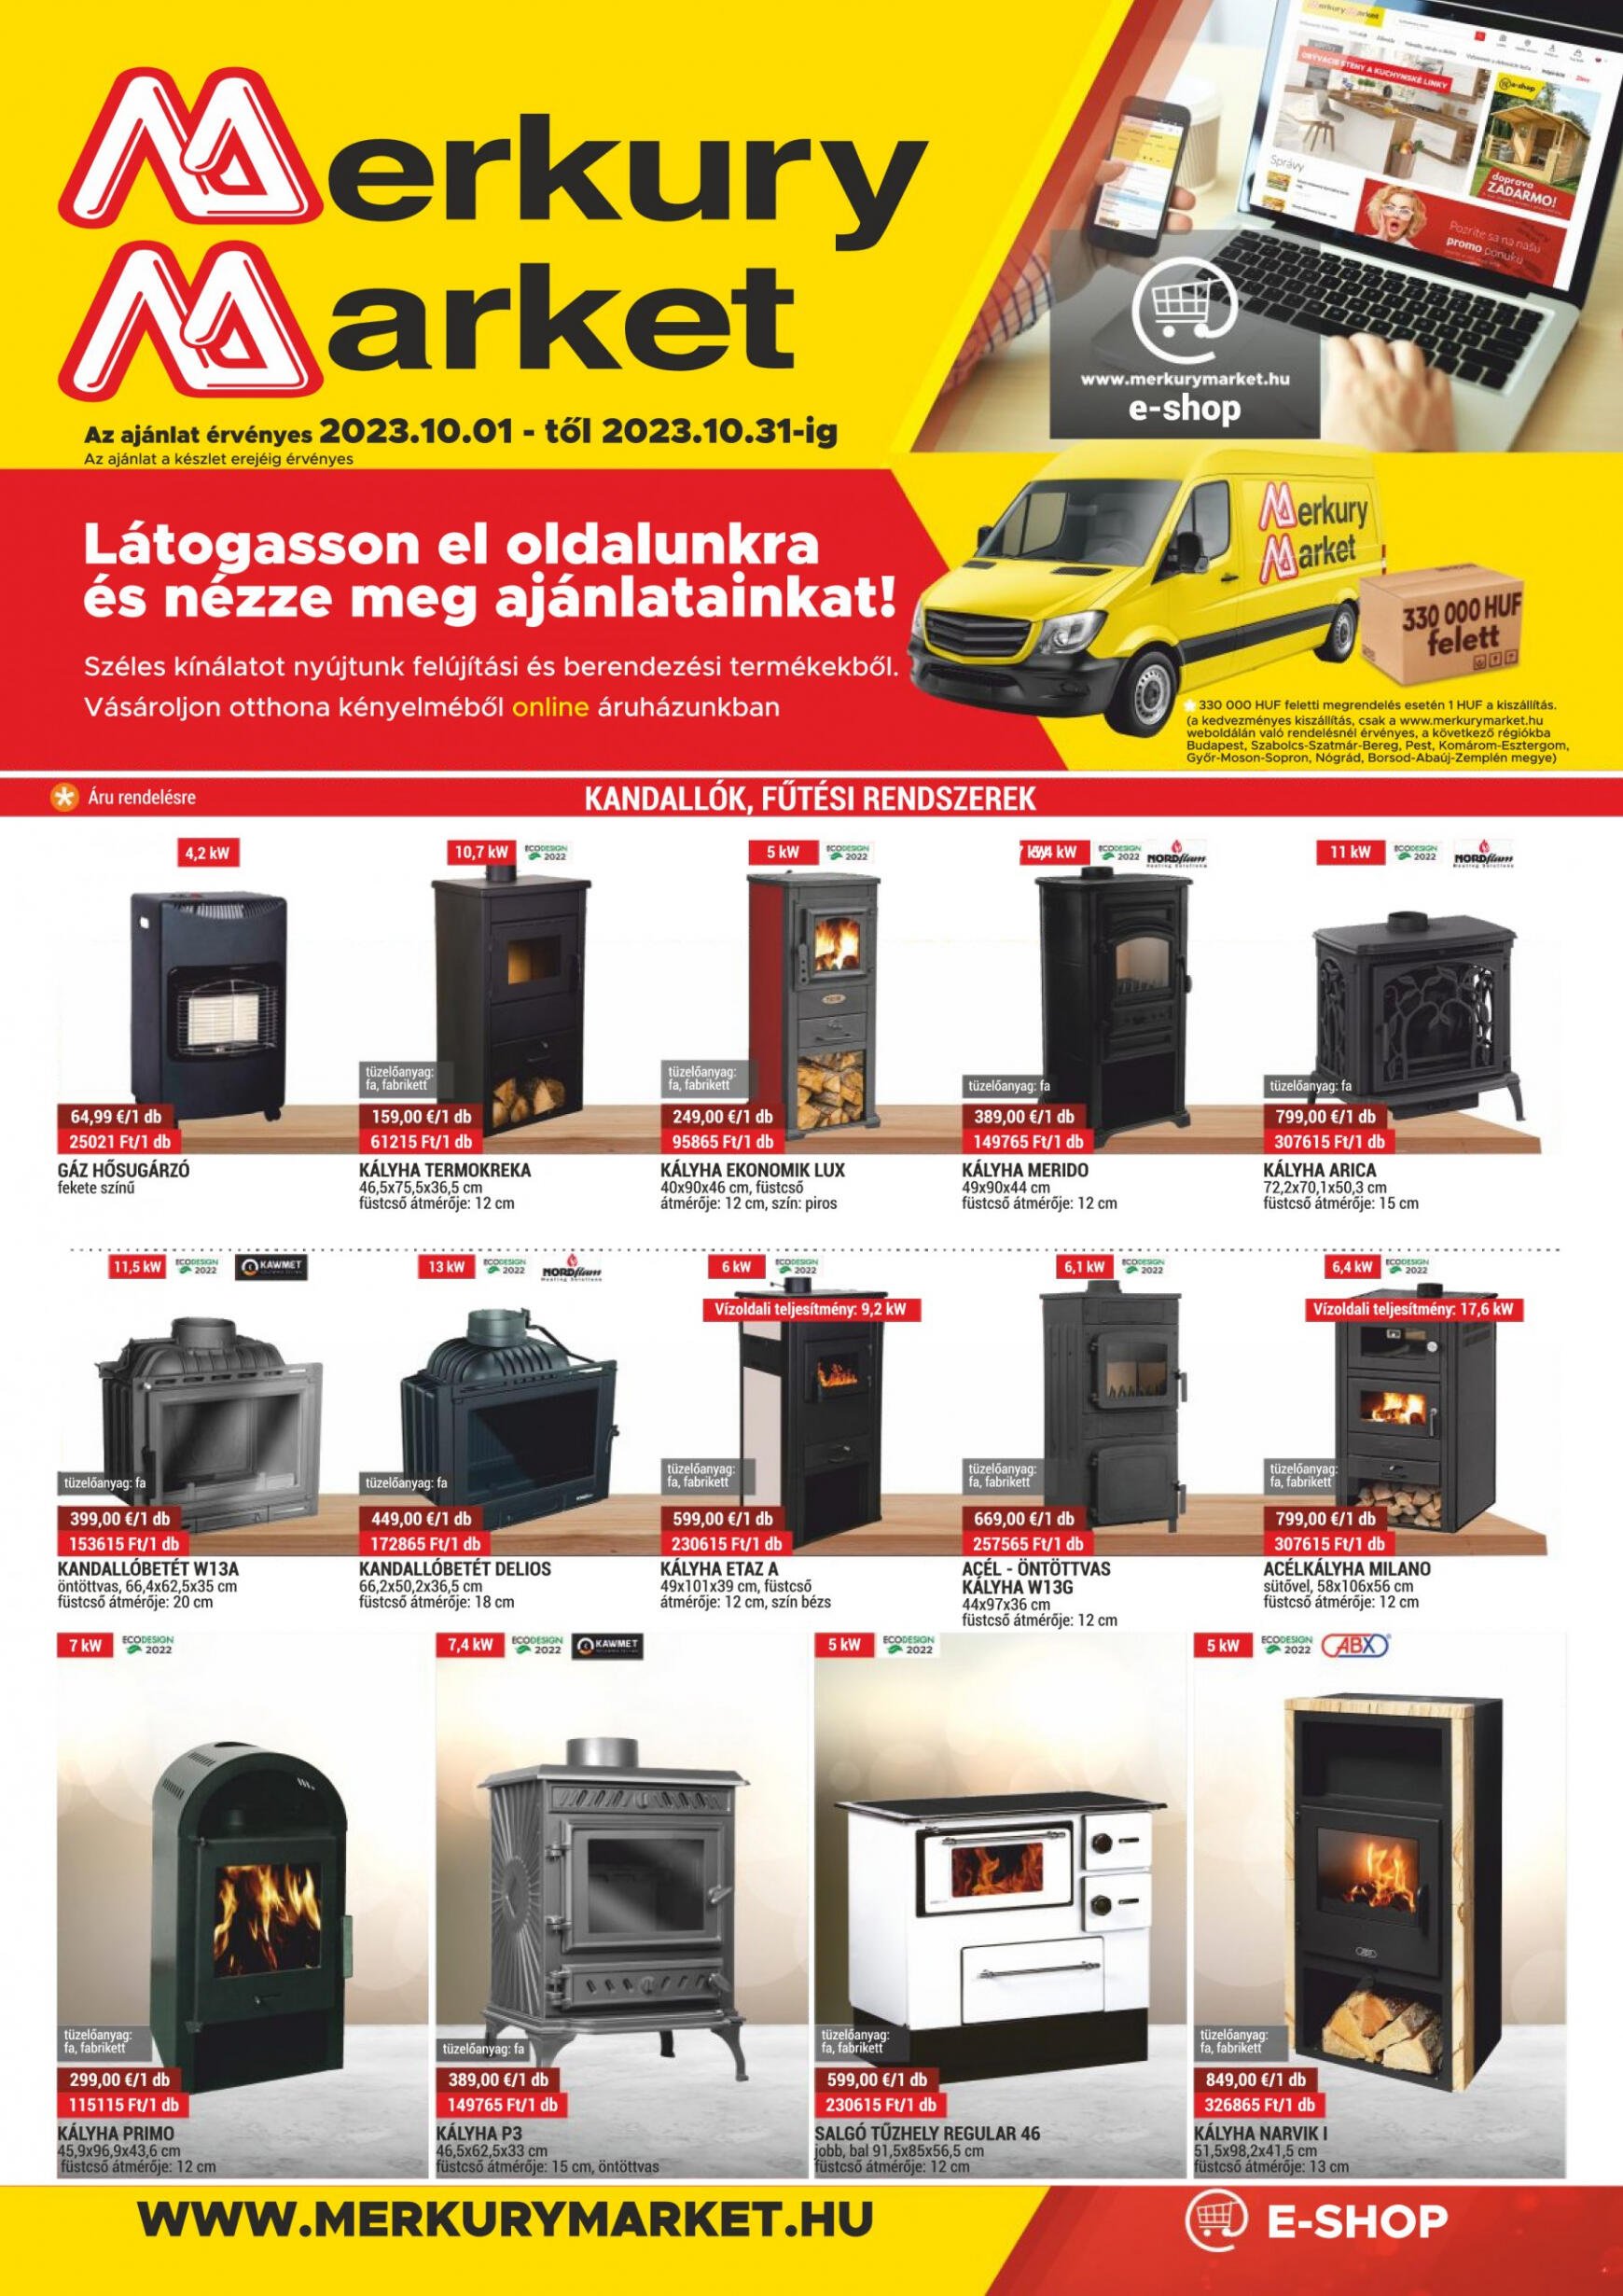 merkury-market - Merkury Market újság vasárnaptól 10.01. - page: 1